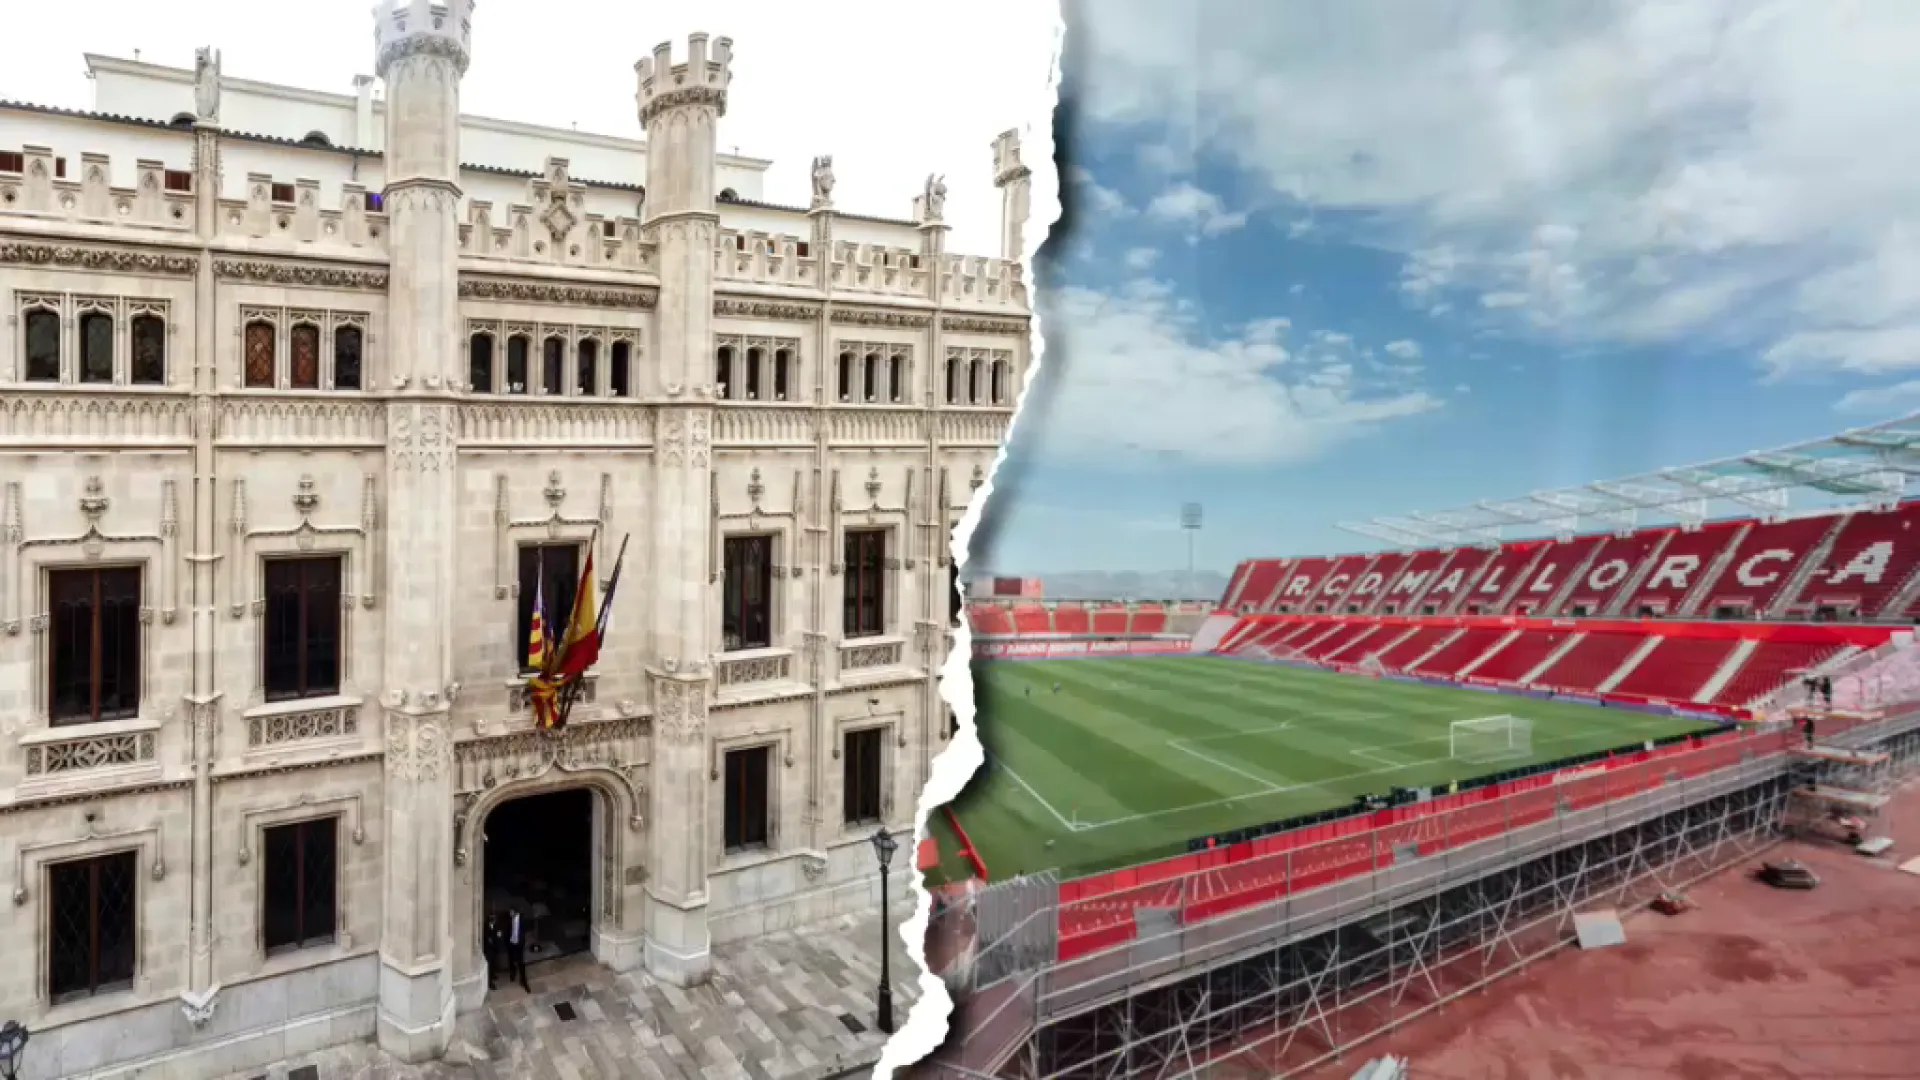 El pròxim ple del Consell aprovarà el nou patrocini esportiu al Reial Mallorca i l’Atlètic Balears